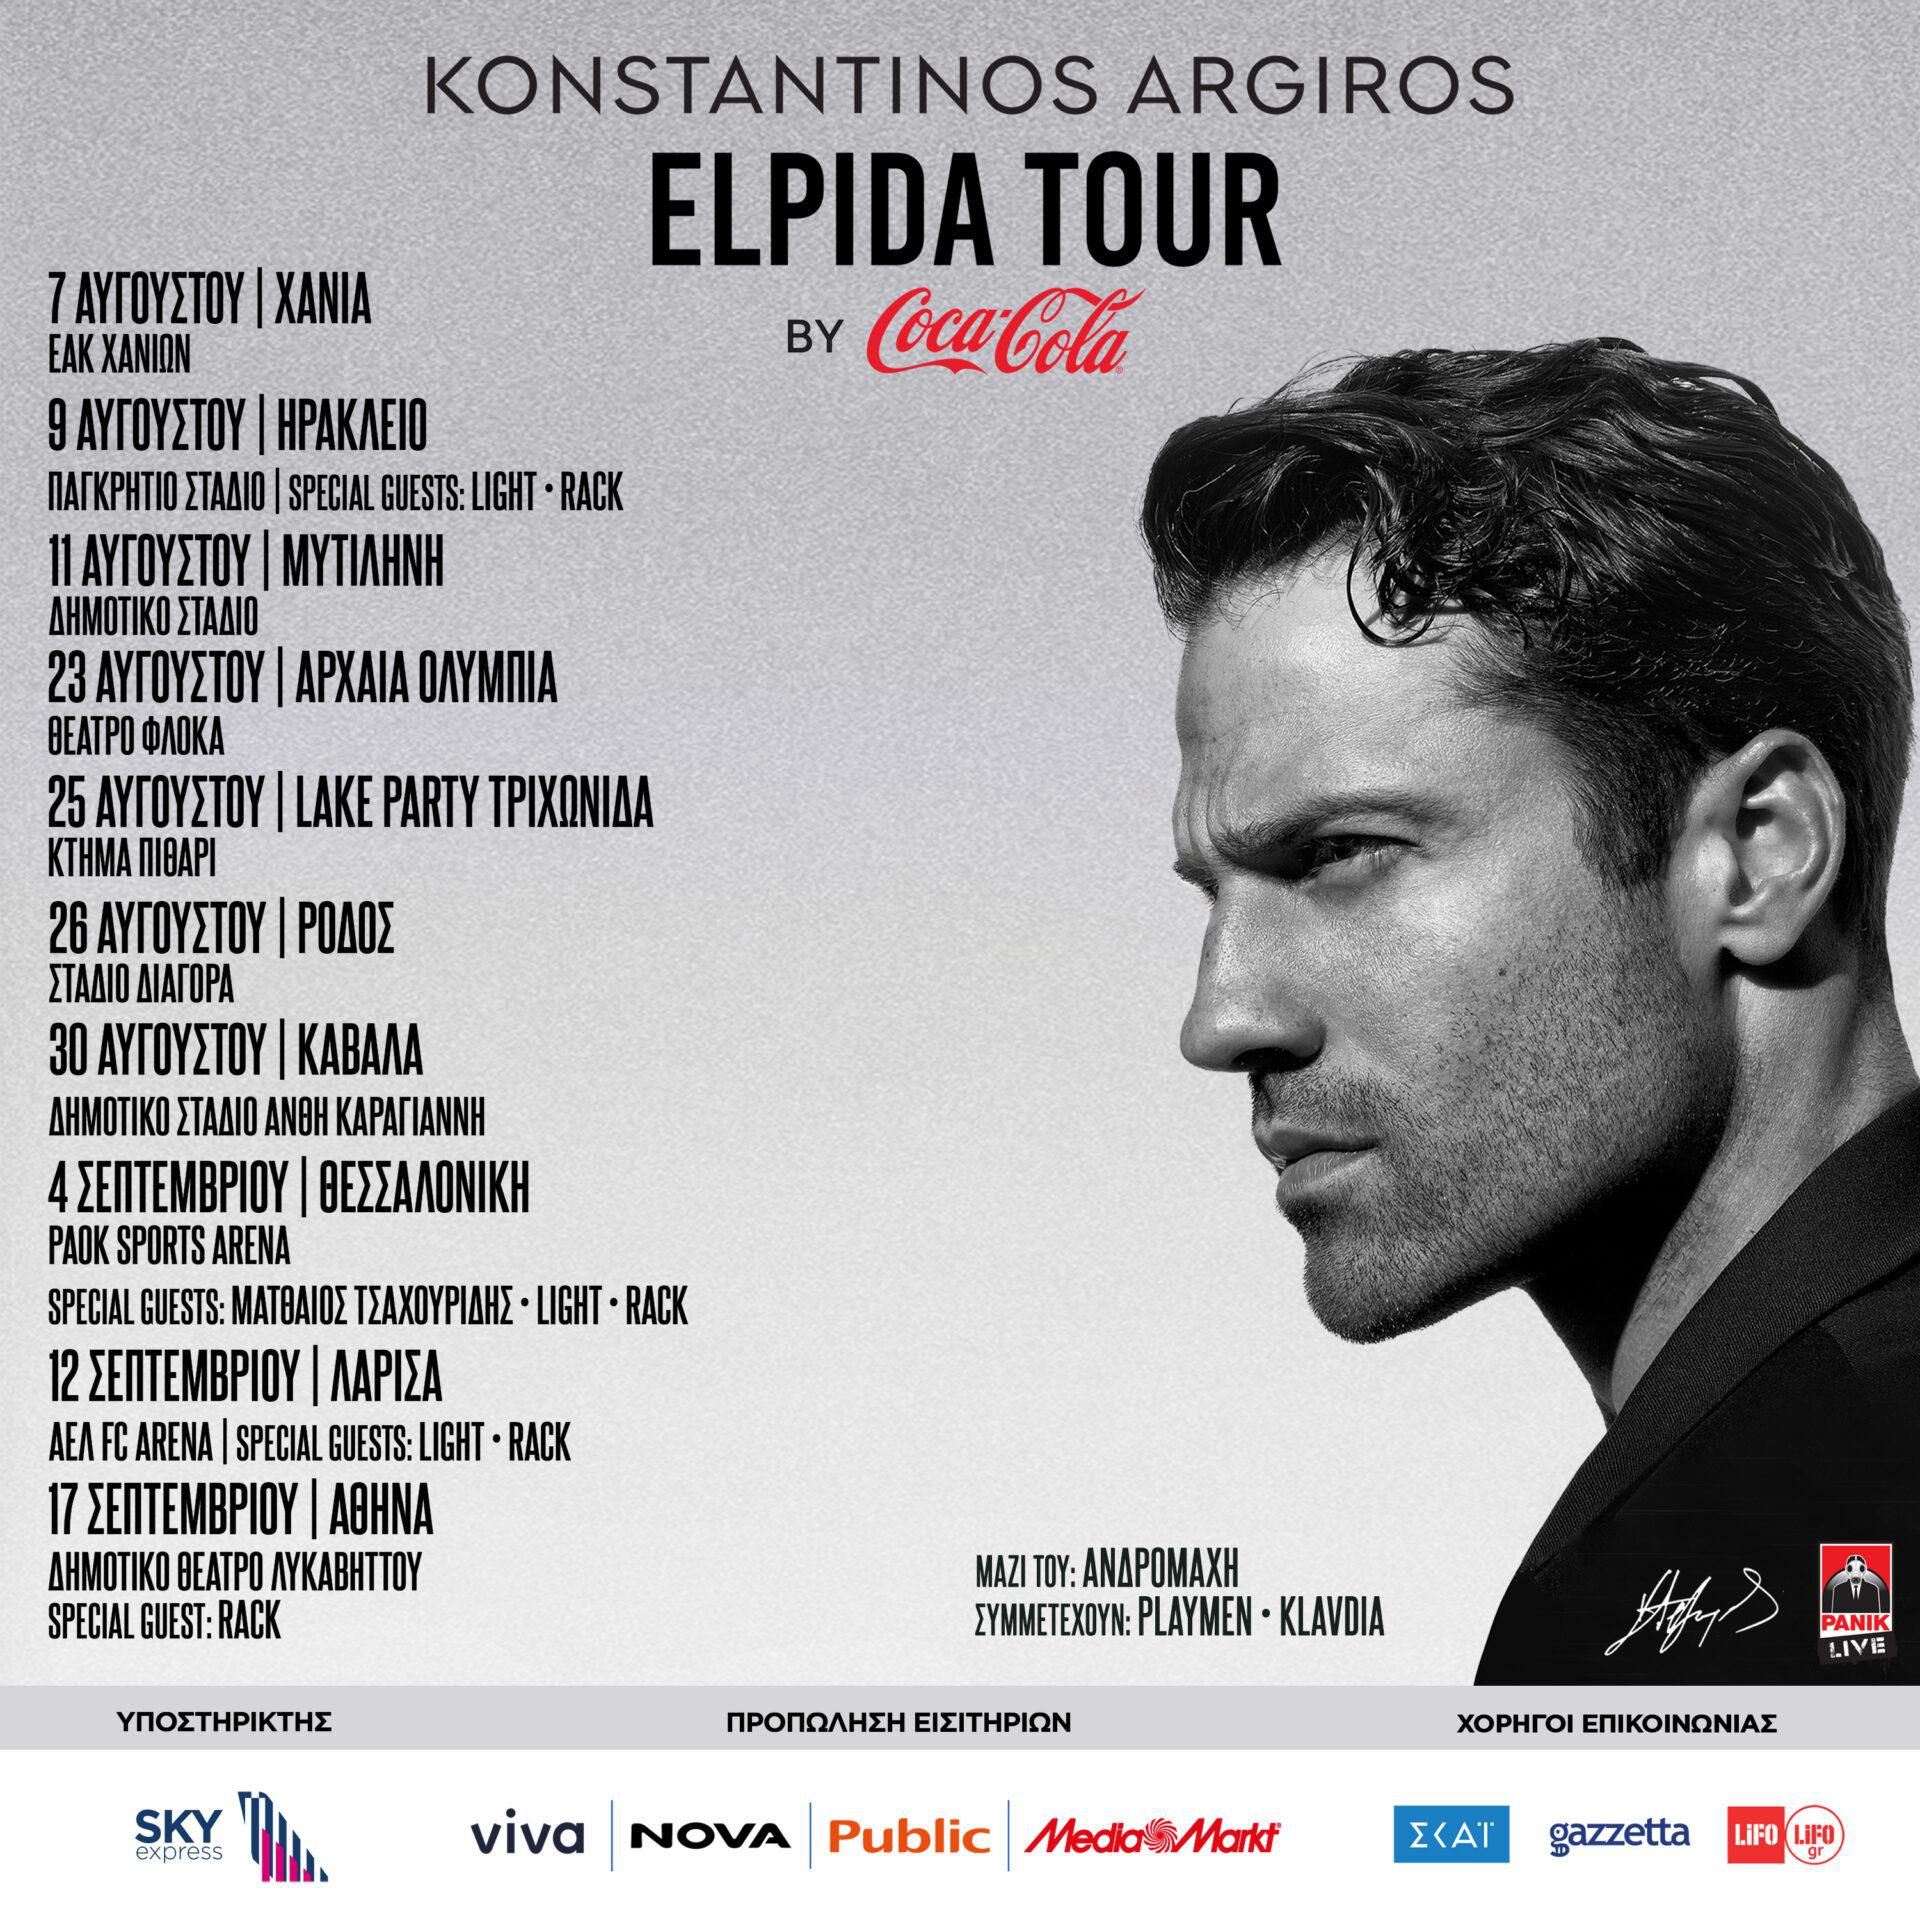 Κωνσταντίνος Αργυρός Elpida Tour | Οι συναυλίες για Αύγουστο & Σεπτέμβριο